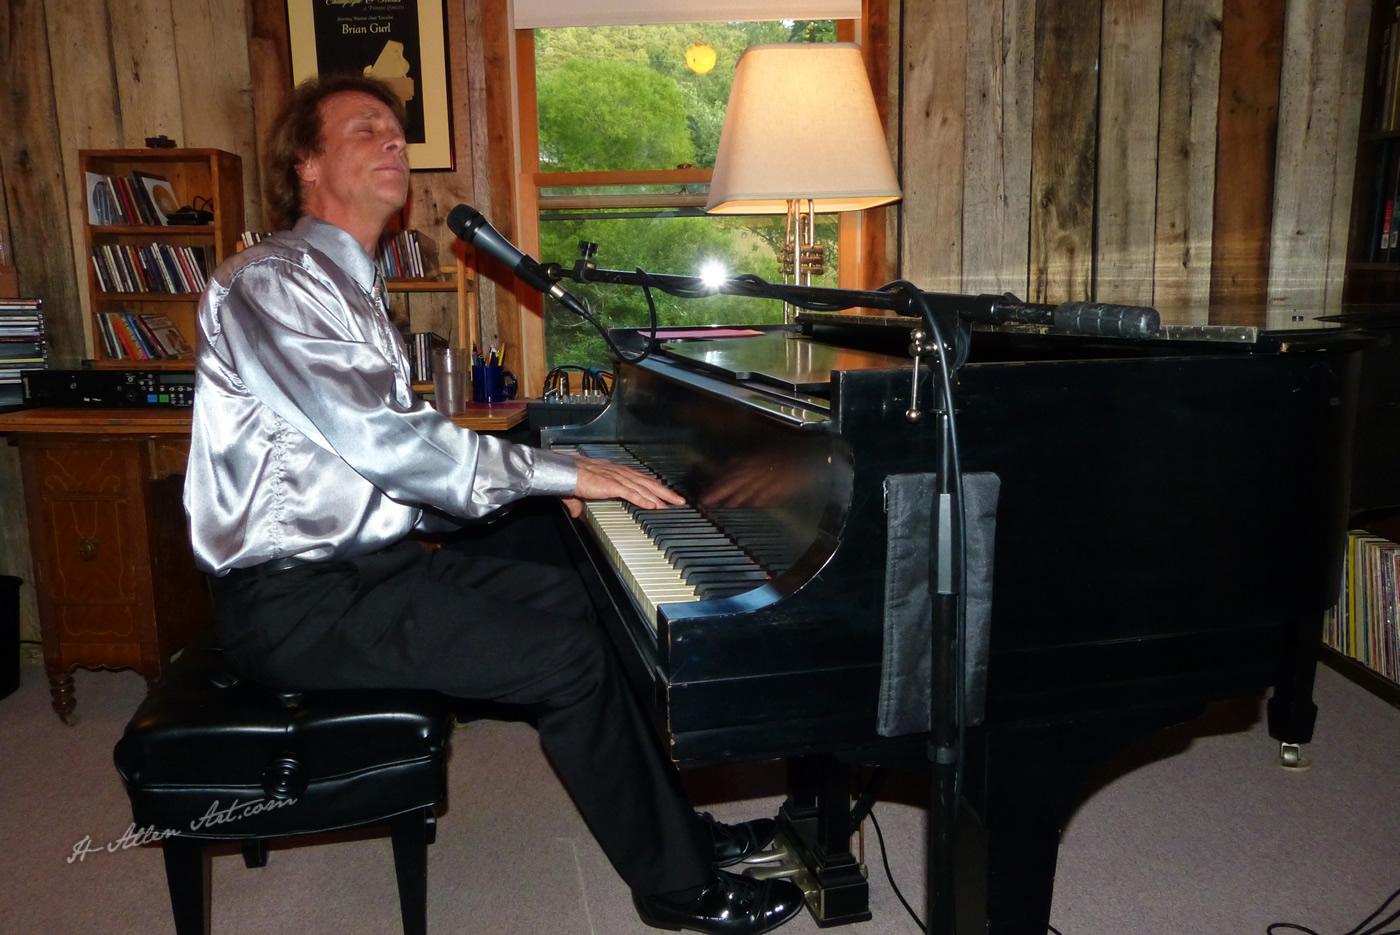 Brian Gurl, Pianist-Entertainer II